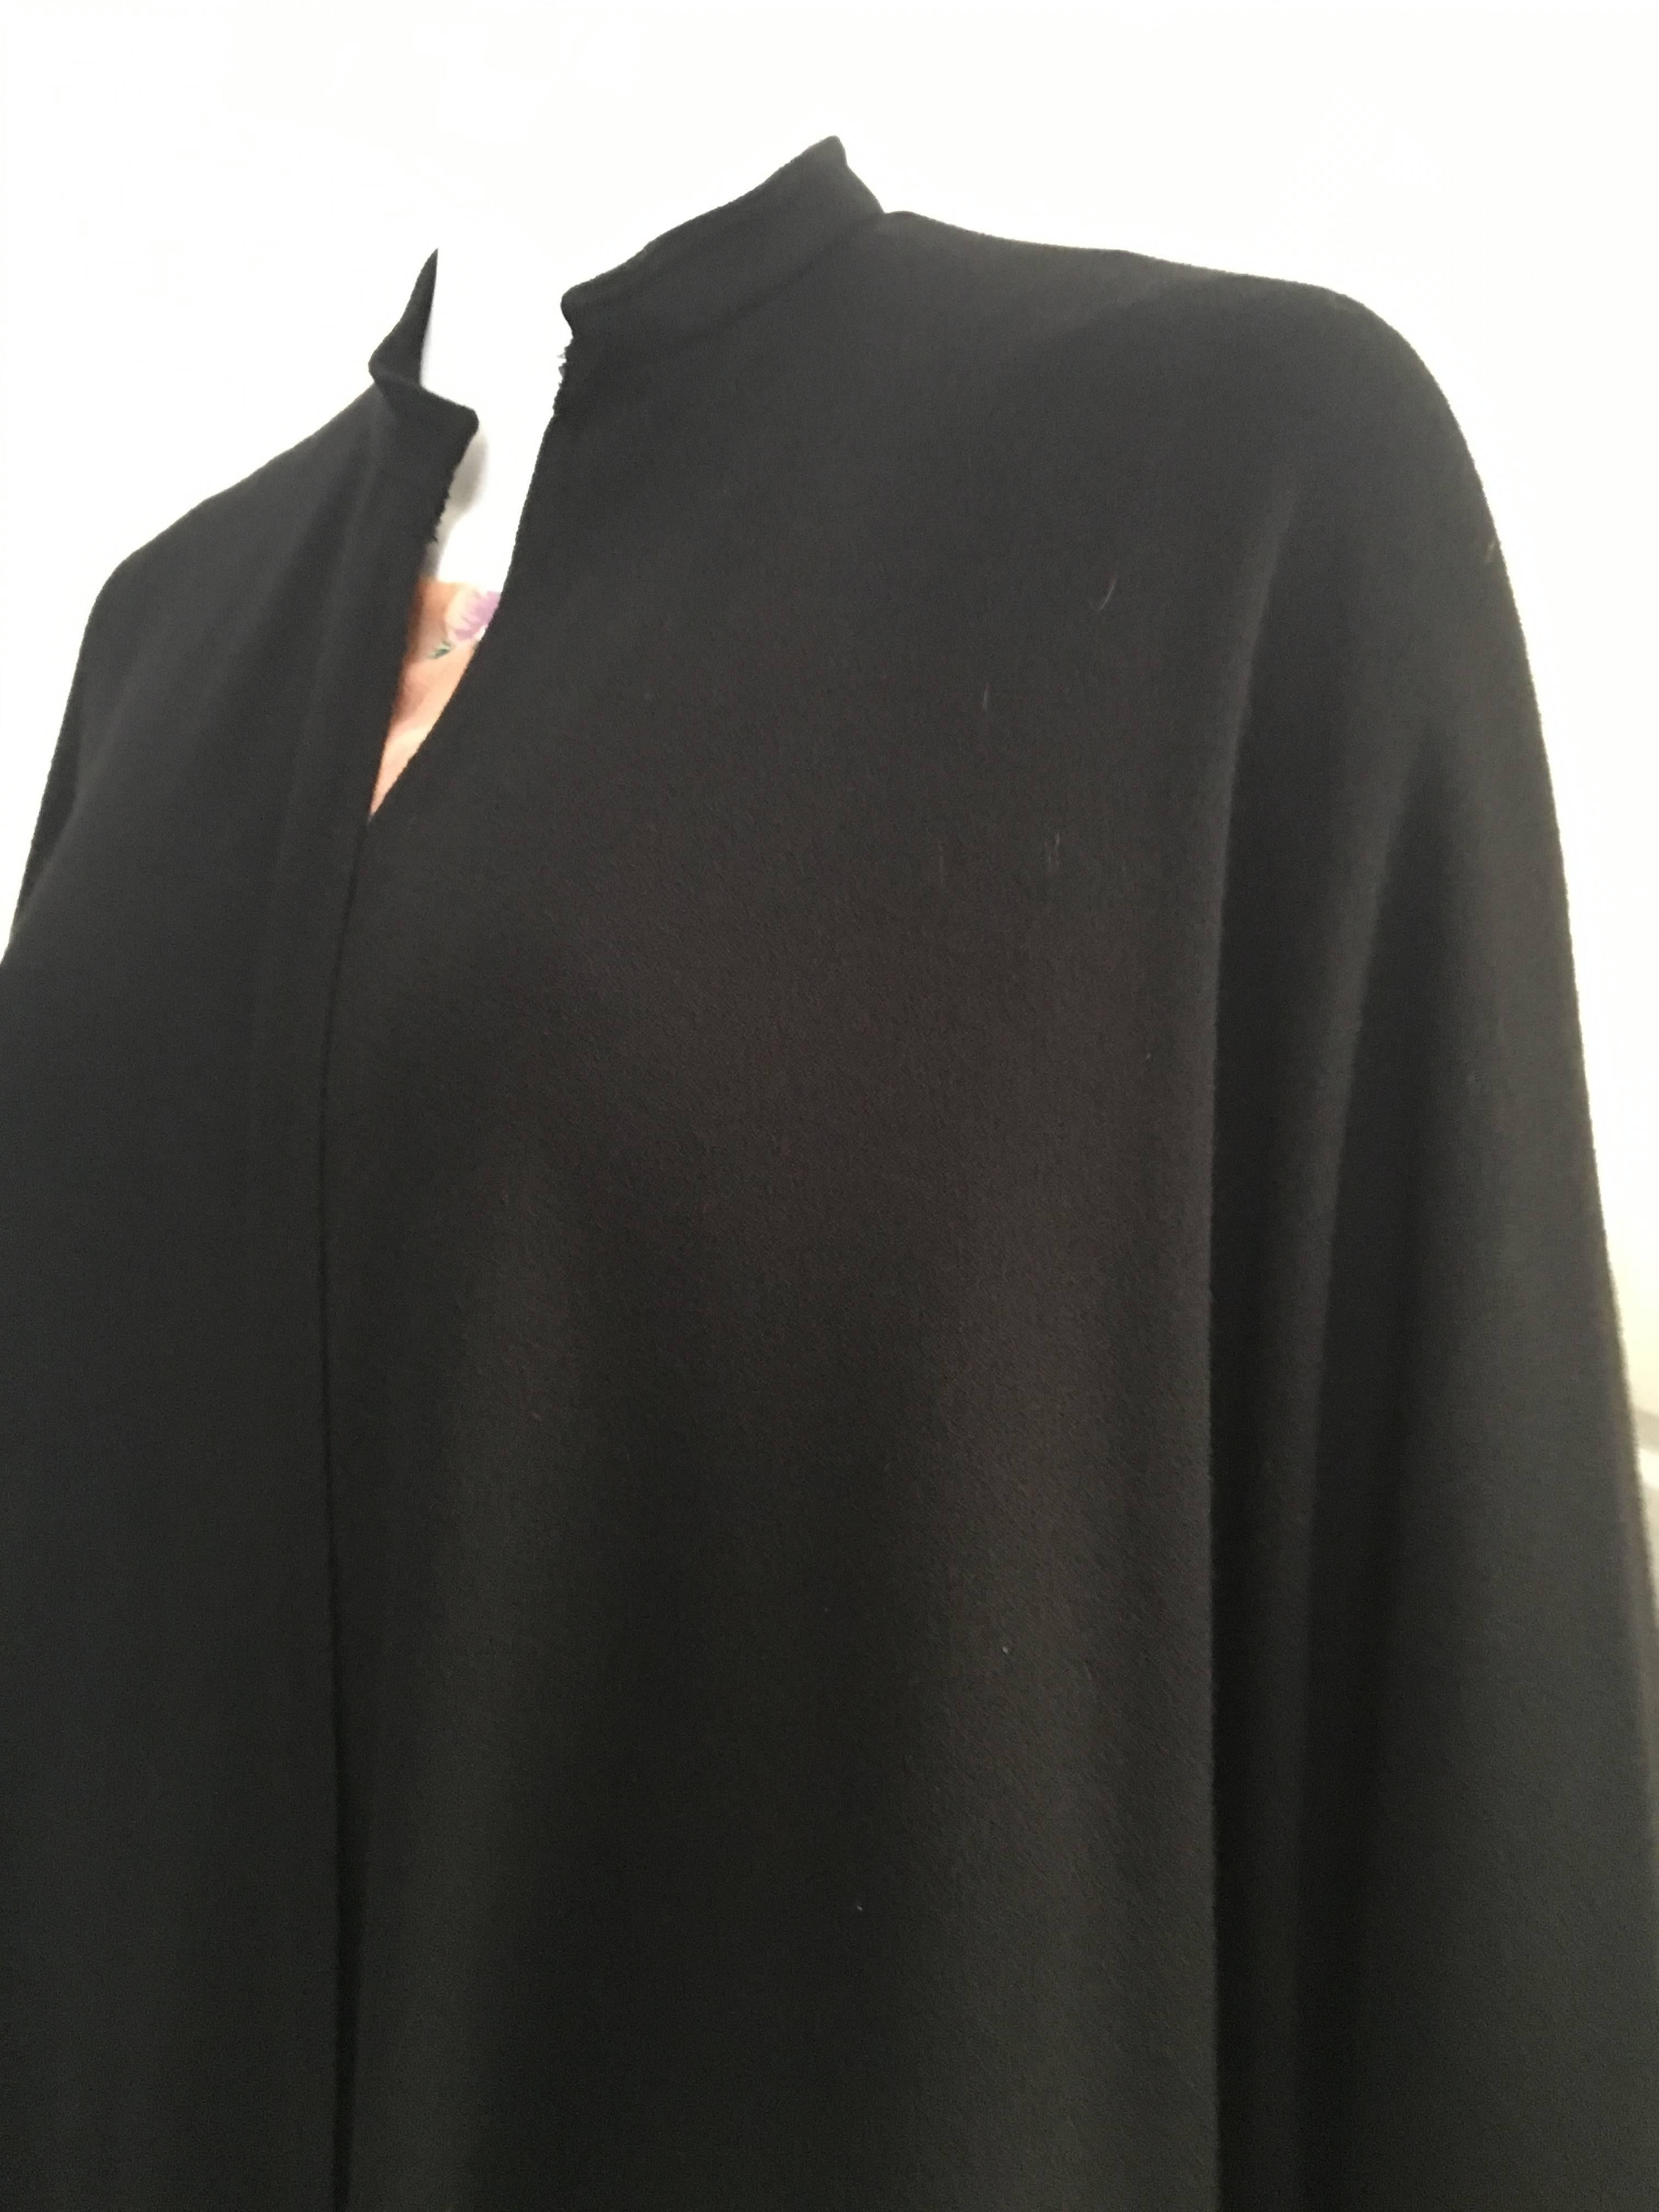 Guy Laroche Black Wool Cape  In Excellent Condition For Sale In Atlanta, GA